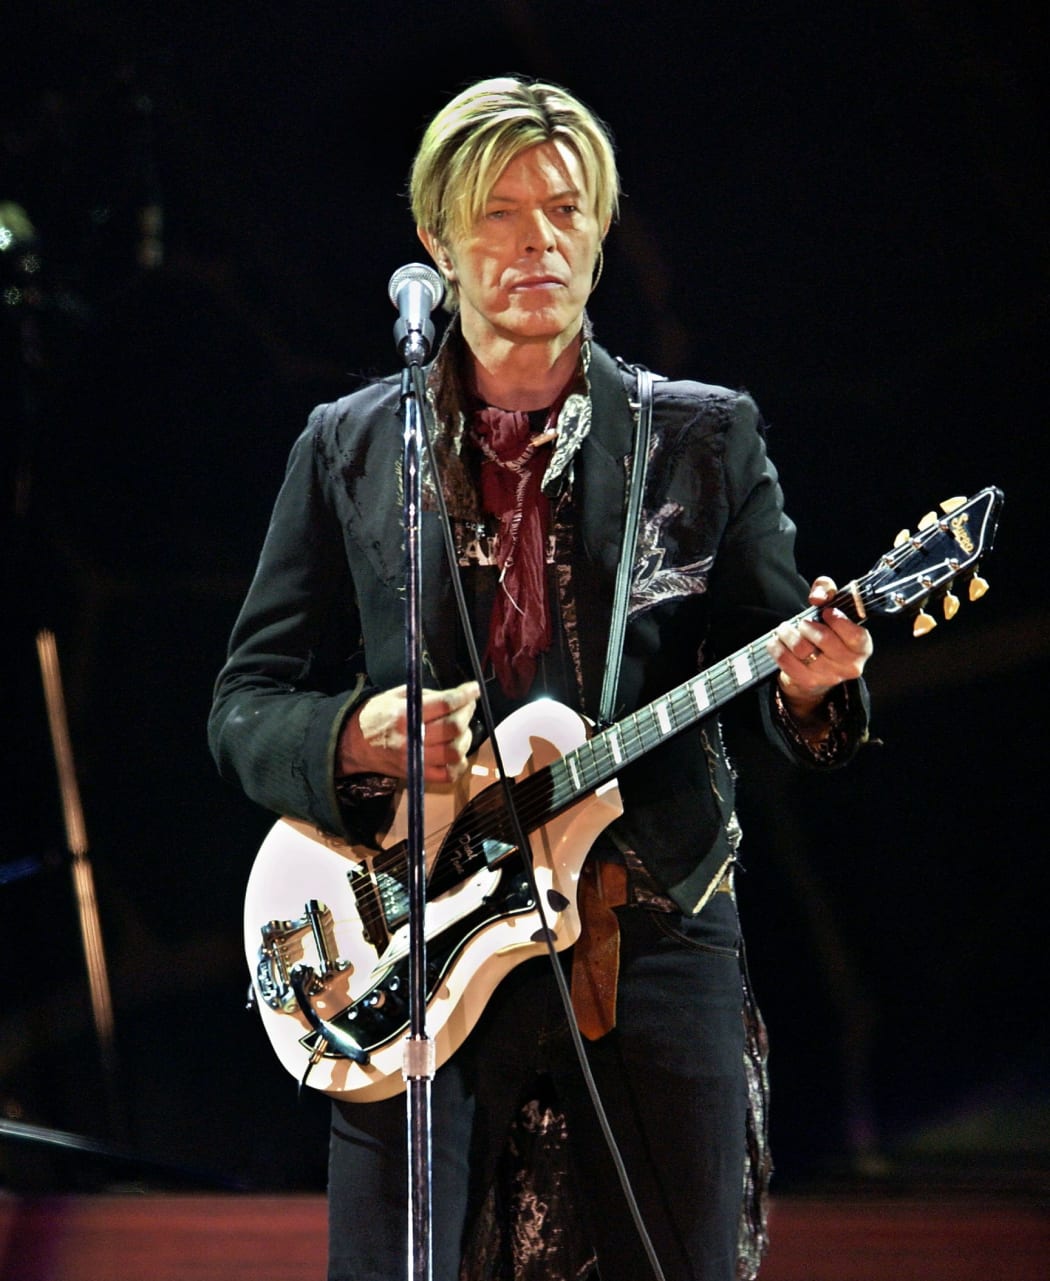 David Bowie performing in Paris in 2003.